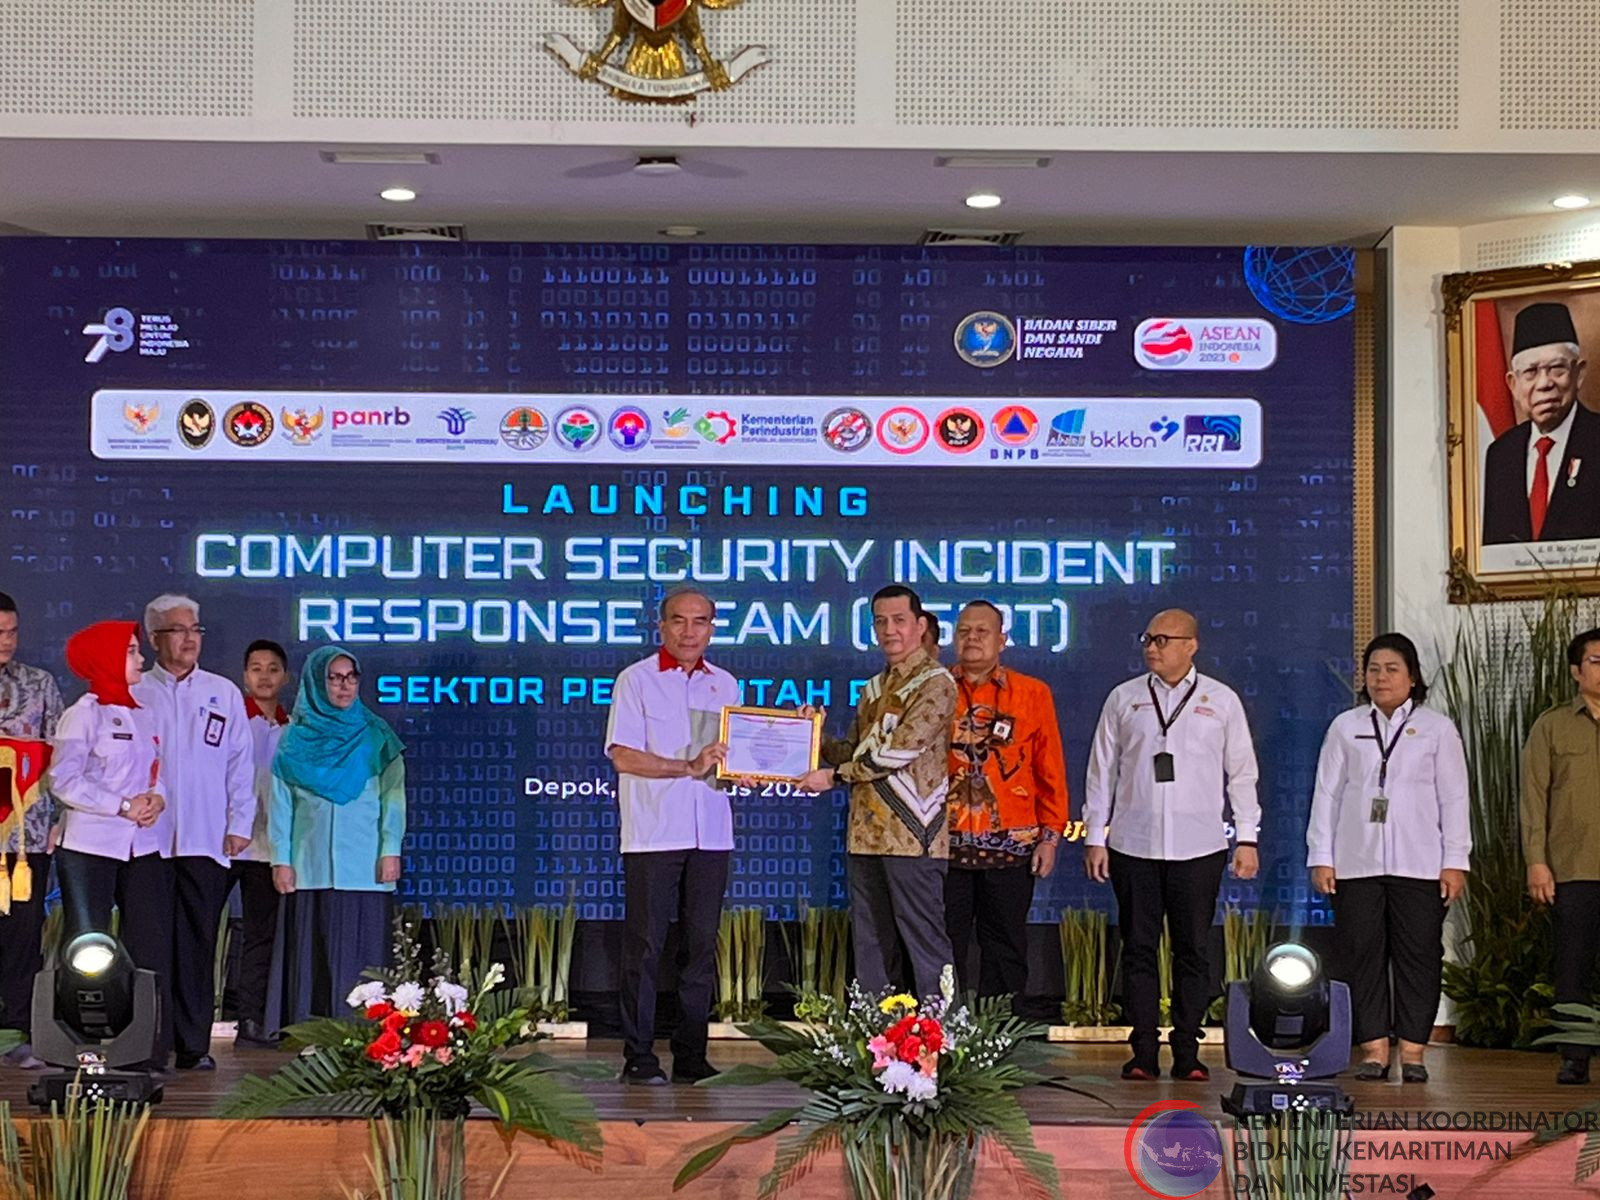 Hadapi Serangan Cyber, Pemerintah Bentuk CSIRT